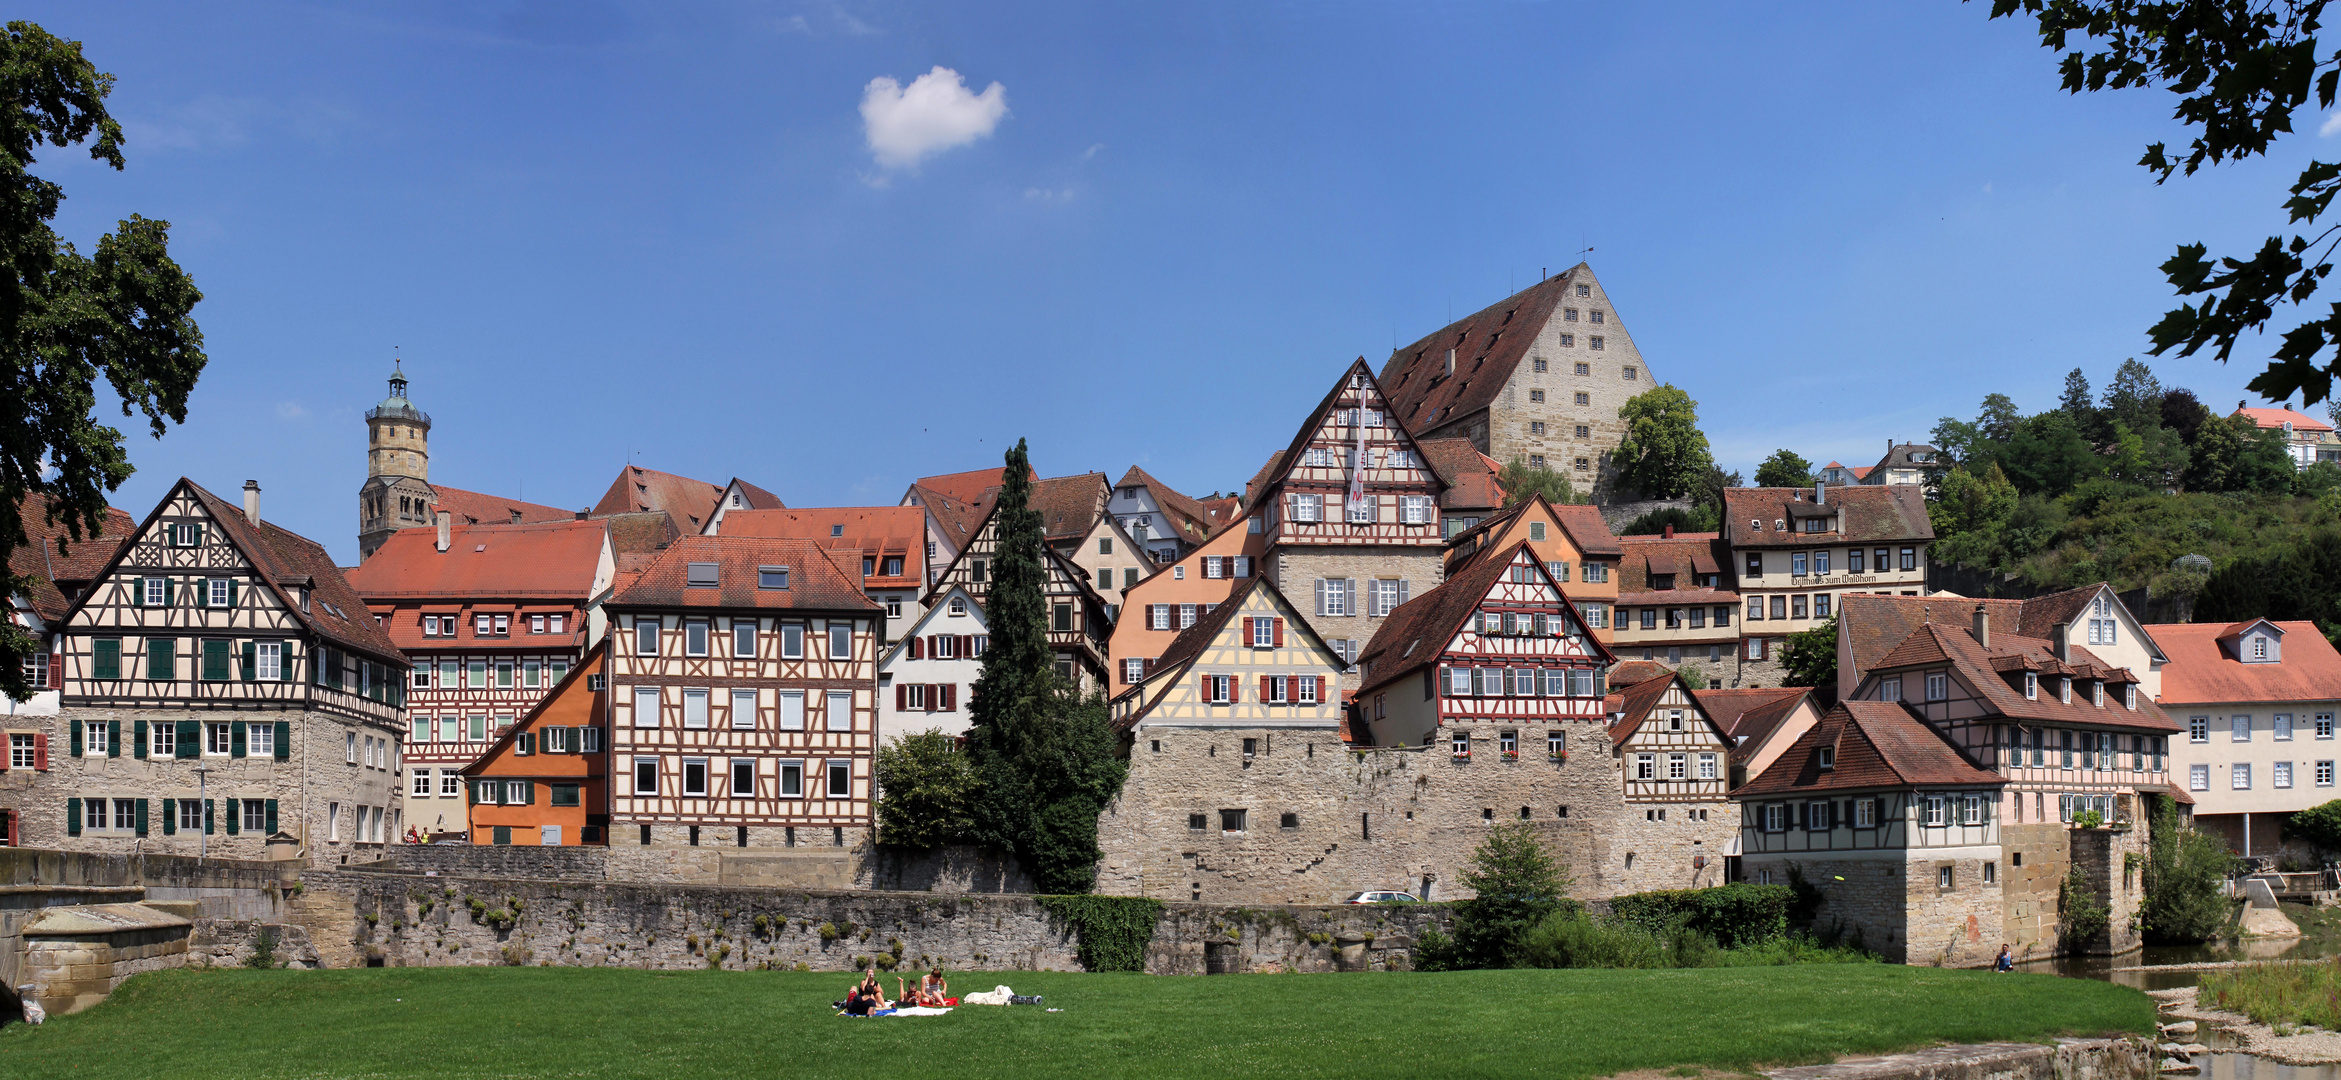 Historische Altstadt Schwäbisch Hall